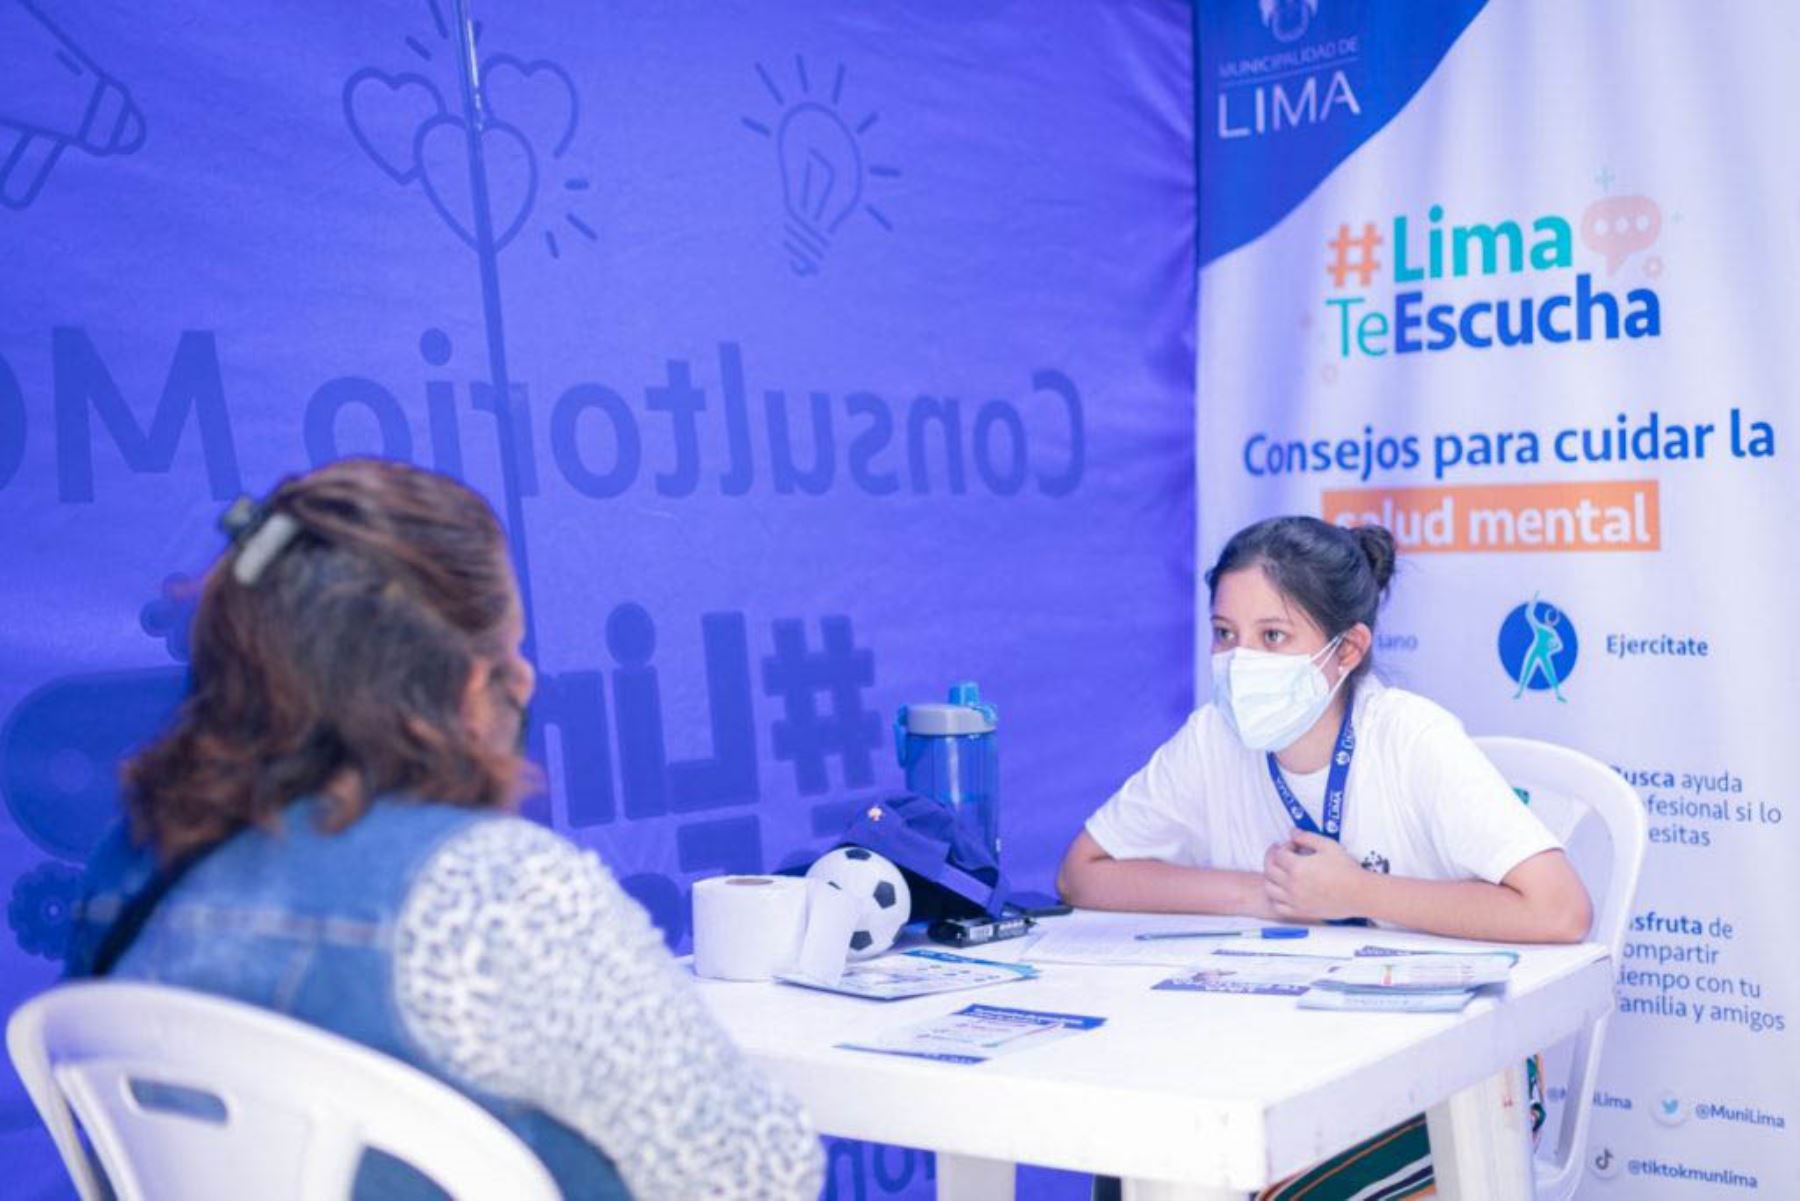 Lima Te Escucha brindará orientación psicológica sin costo alguno en consultorios móviles. Foto: ANDINA/difusión.